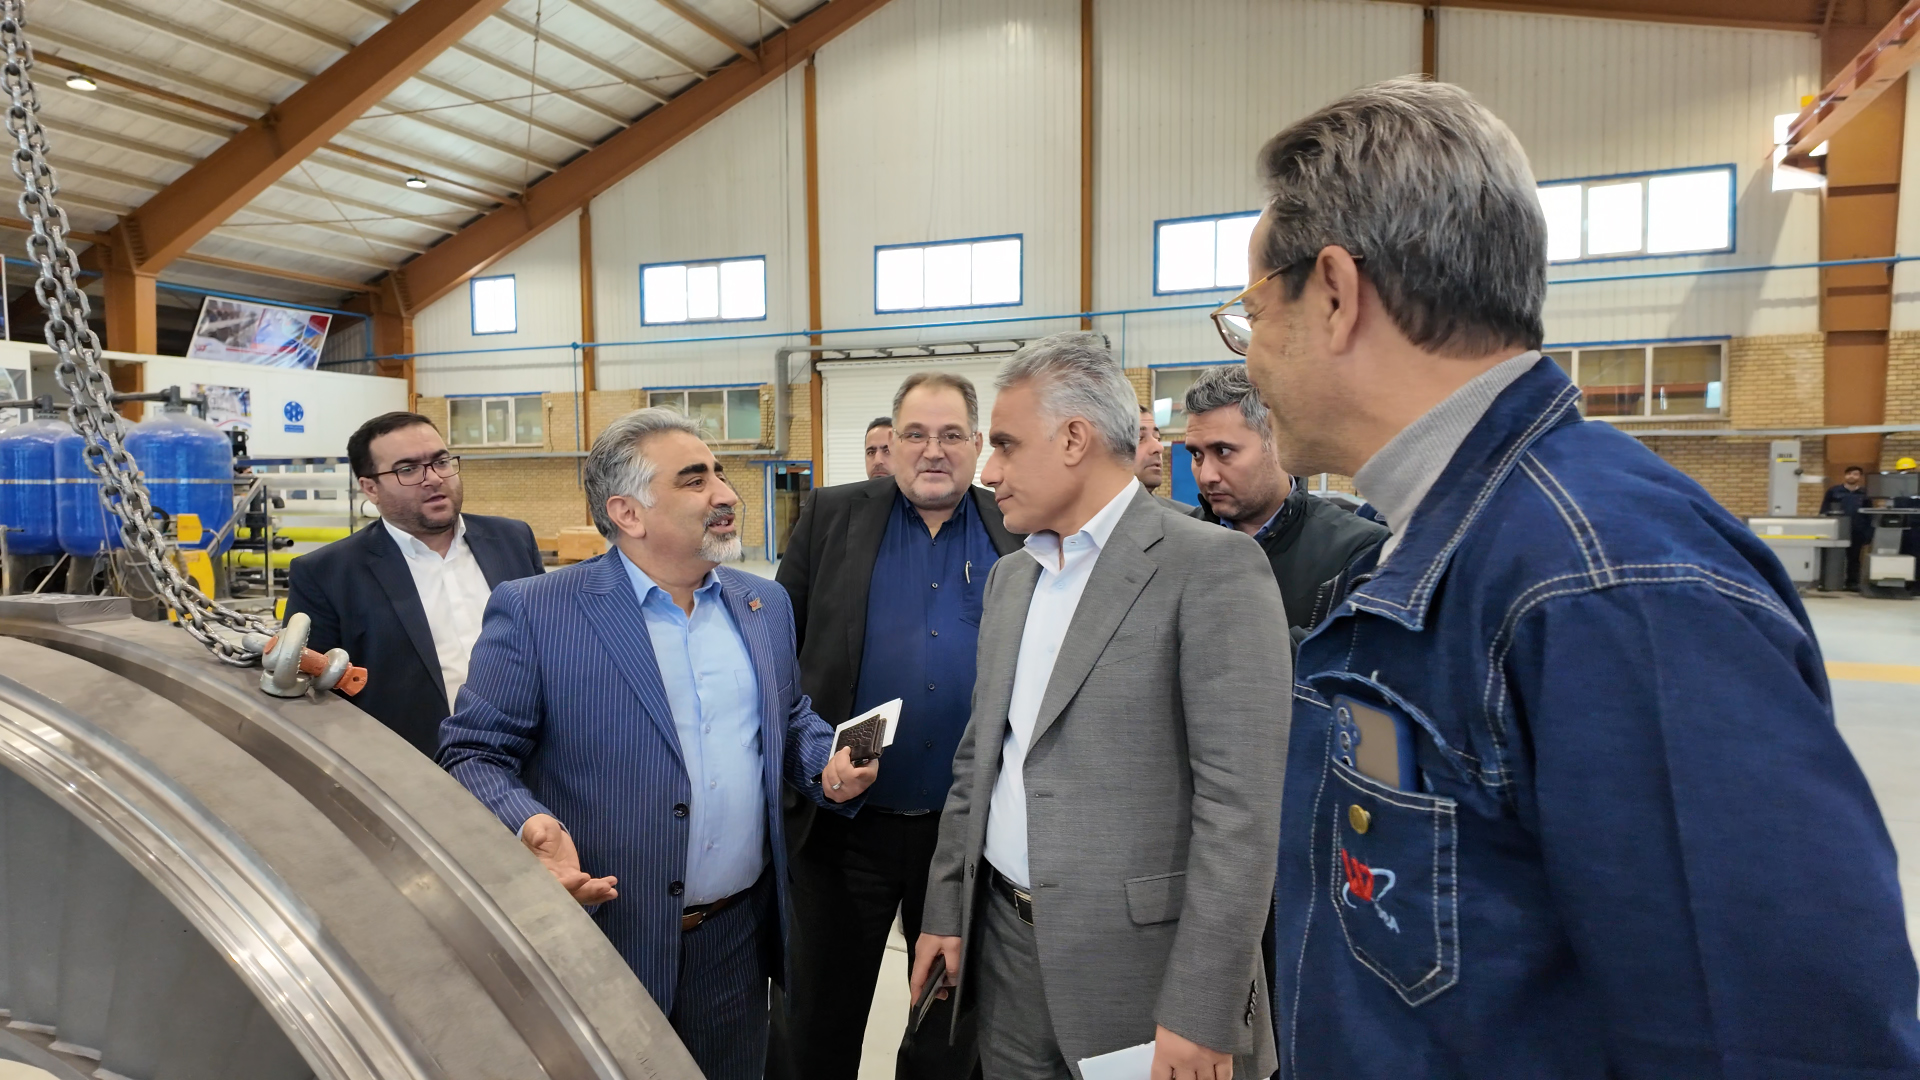 بازدید دکتر سیجانی، مدیر کل محترم سازمان صنعت، معدن و تجارت استان تهران به همراه معاونین و هیئت همراه از کارخانه شرکت تابا.